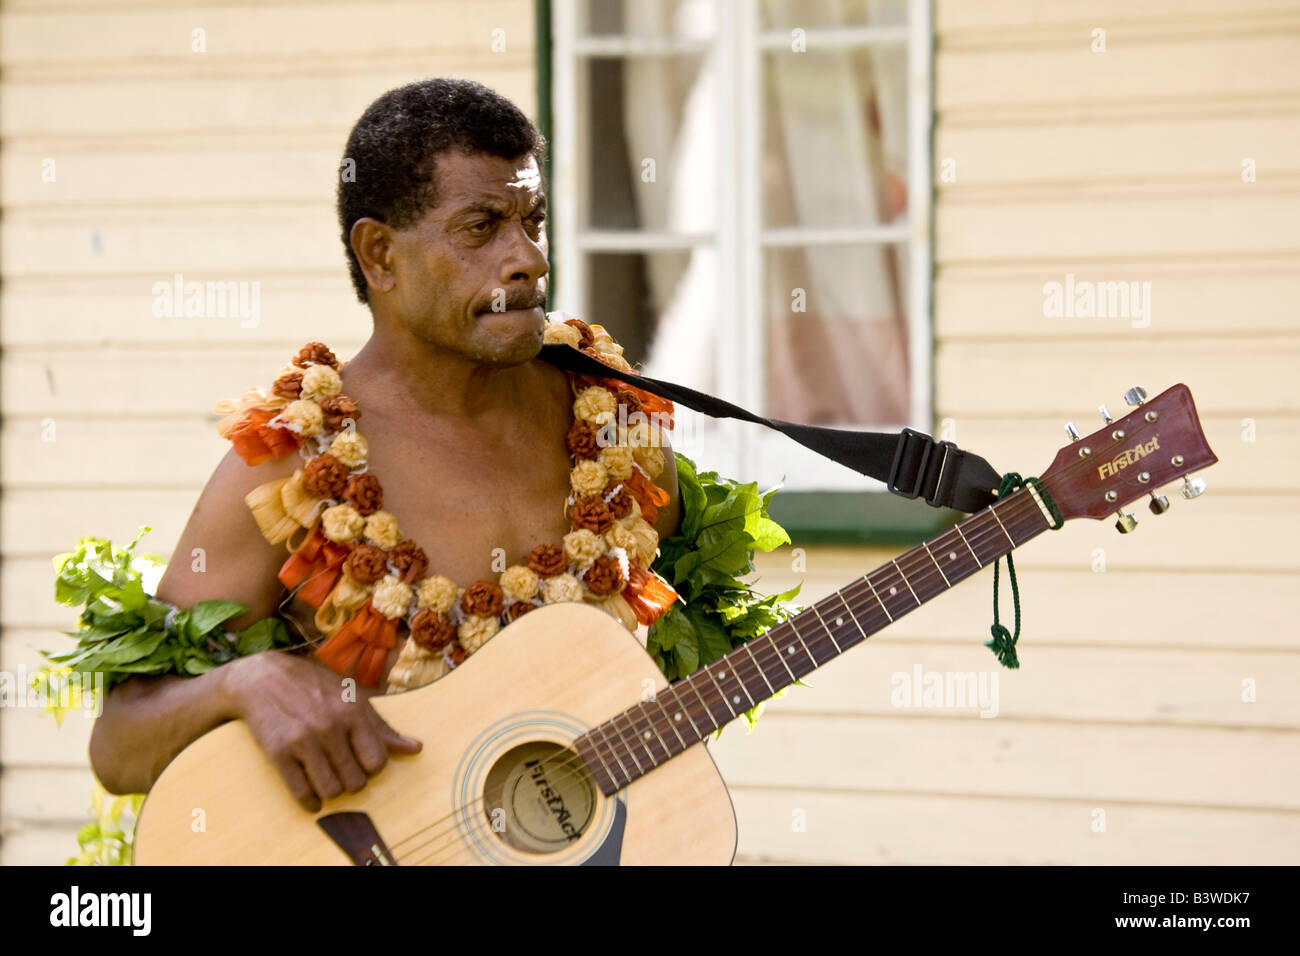 Océanie, Fidji, Viti Levu, Viseisei. Portrait d'un homme en costume autochtone tenant une guitare. Banque D'Images